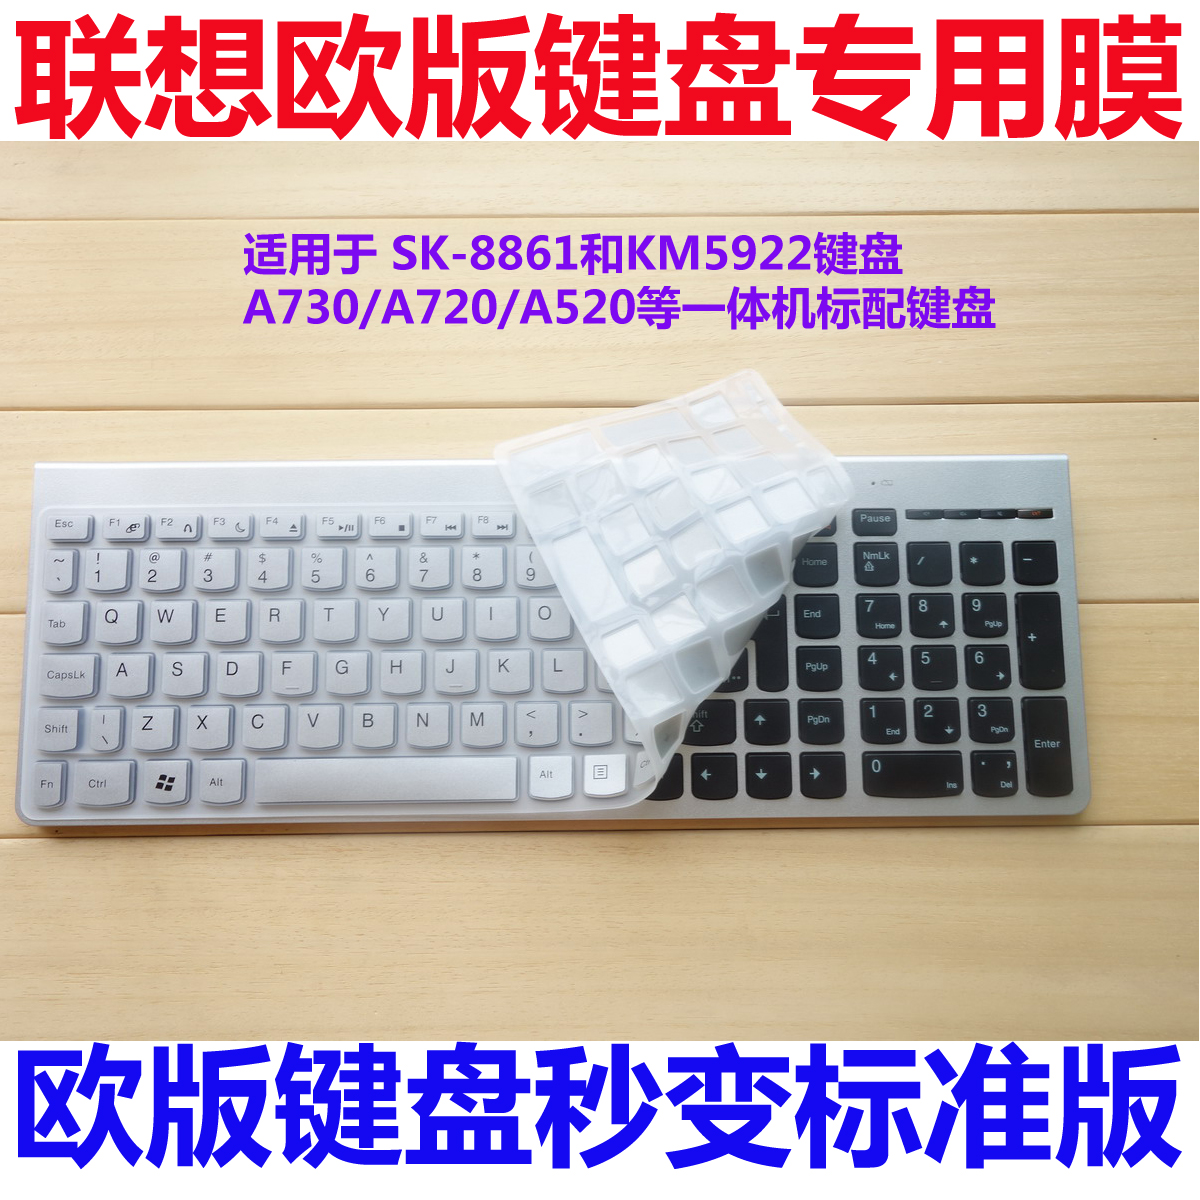 联想一体机A720/A730/A520无线键盘SK-8861 KM5922专用键盘膜贴膜